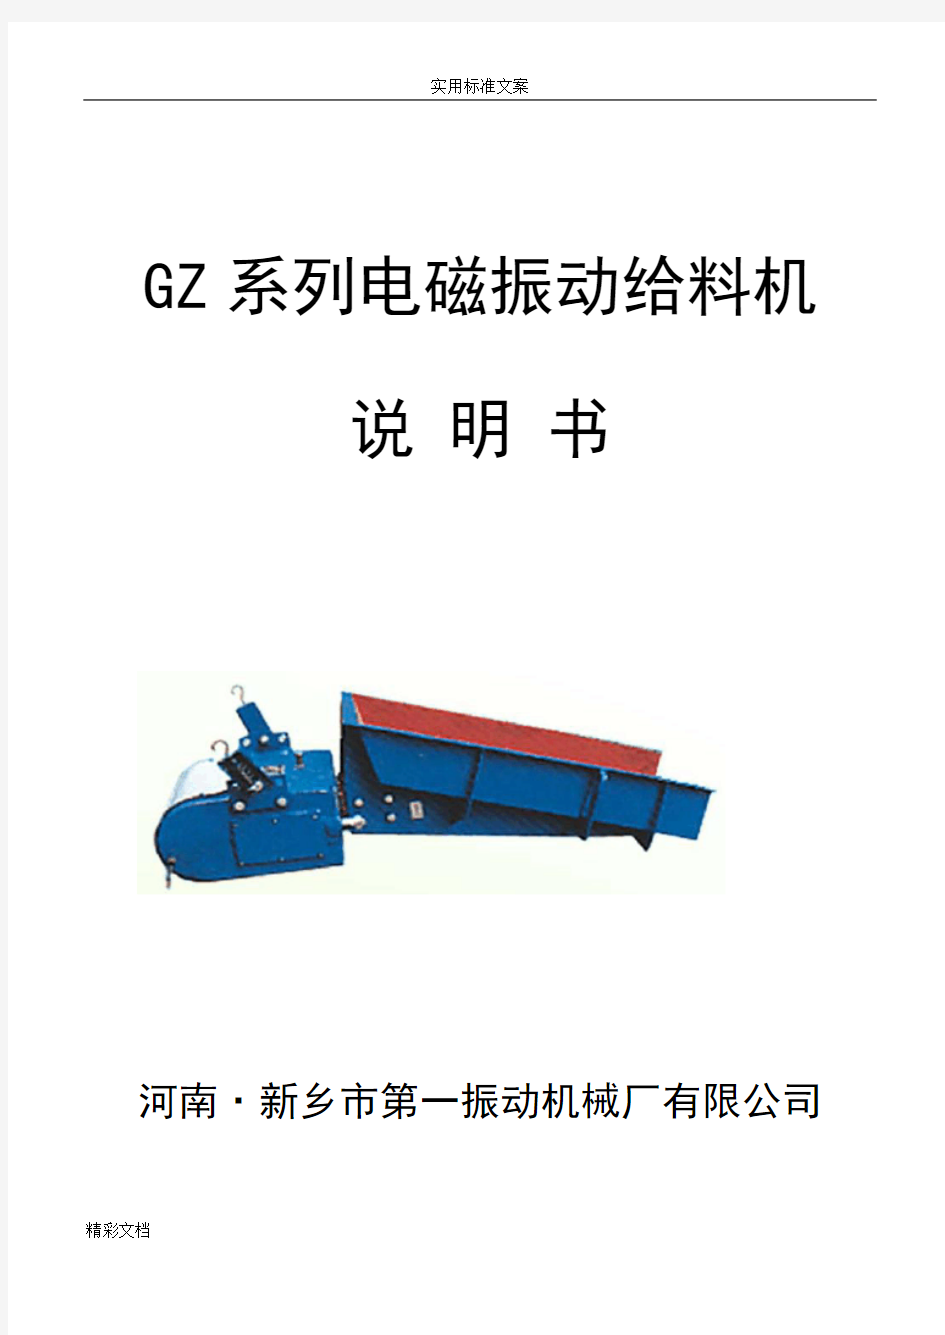 GZ系列电磁振动给料机说明书